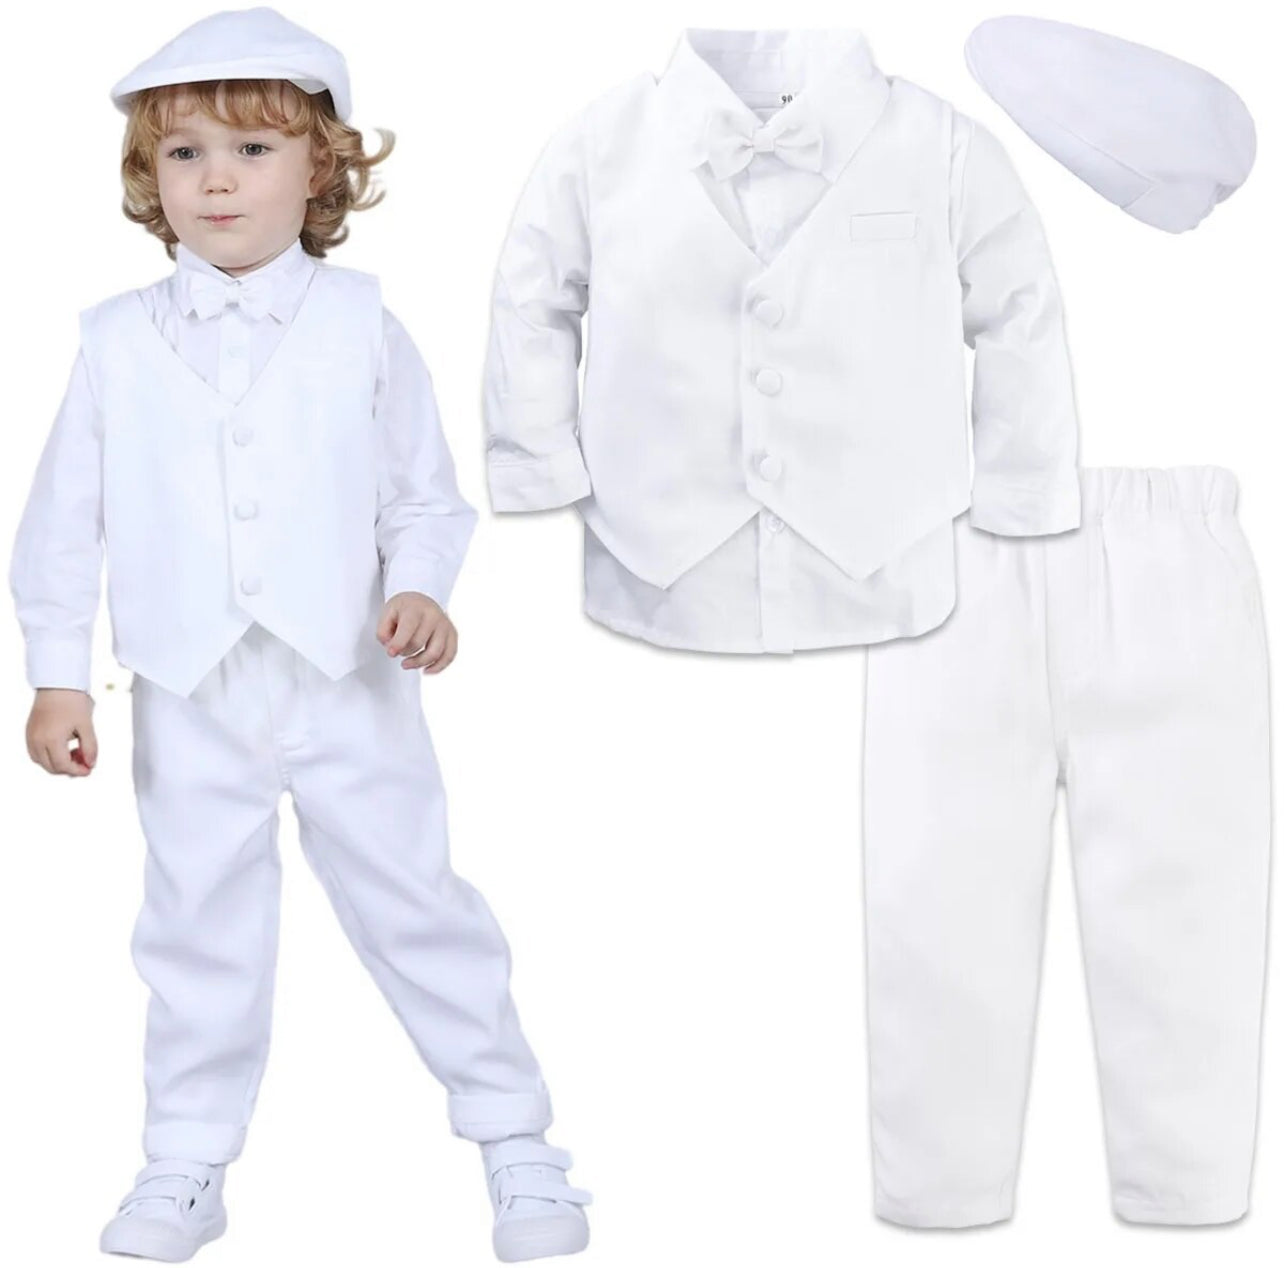 4 Piece Set, Formal Suit,Outfit for Boy’s, Vest Shirt Pants Hat